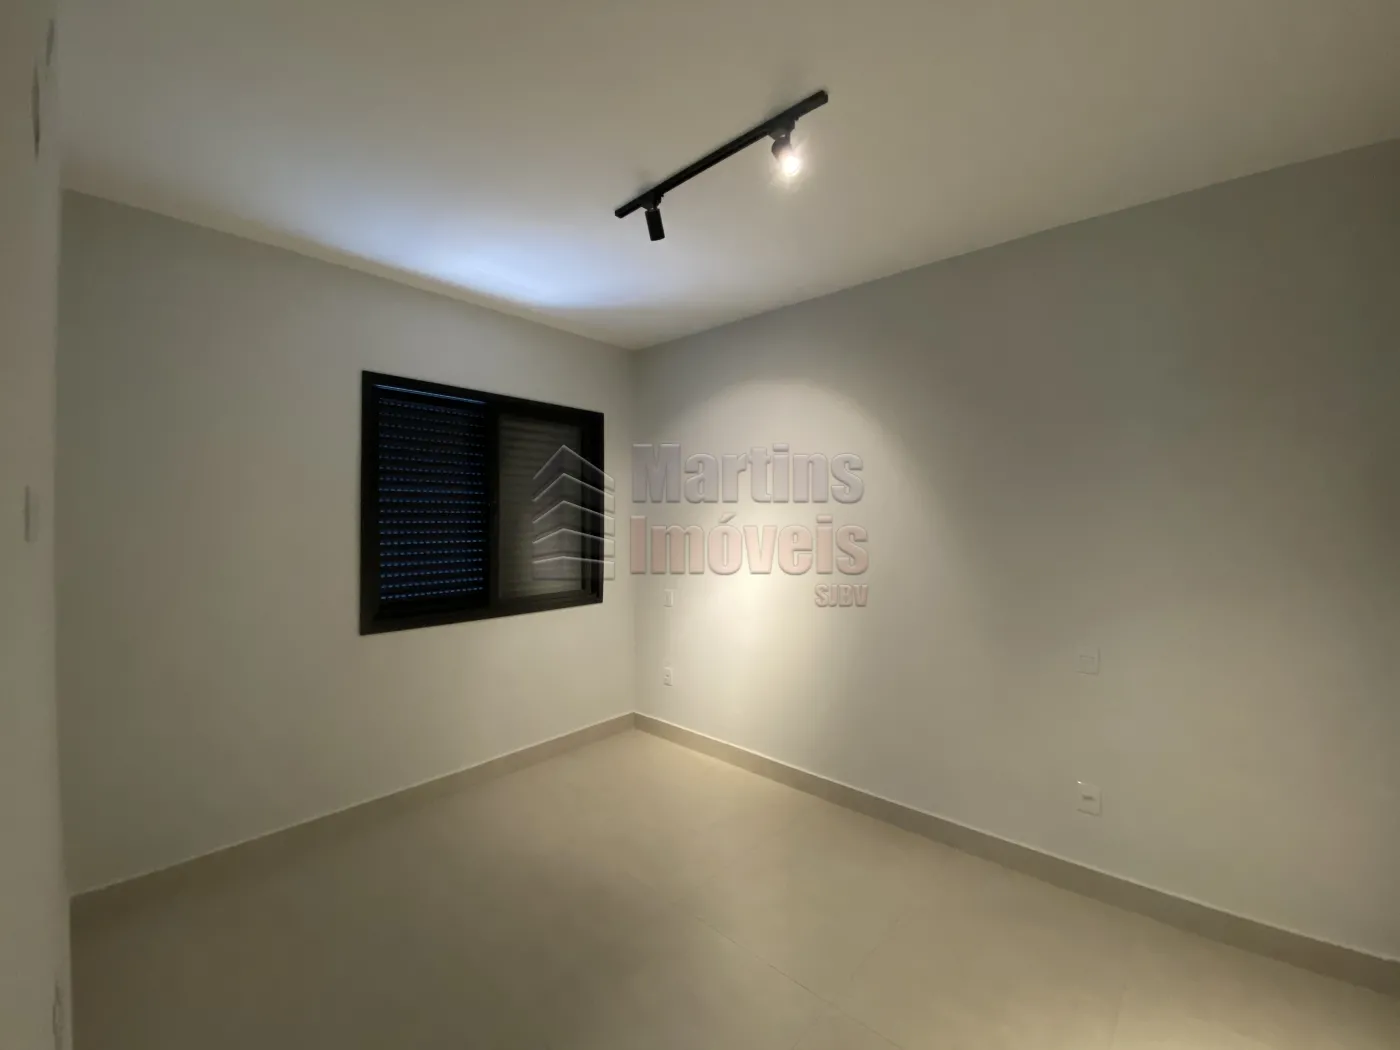 Alugar Apartamento / Sobreloja em São João da Boa Vista R$ 4.000,00 - Foto 9